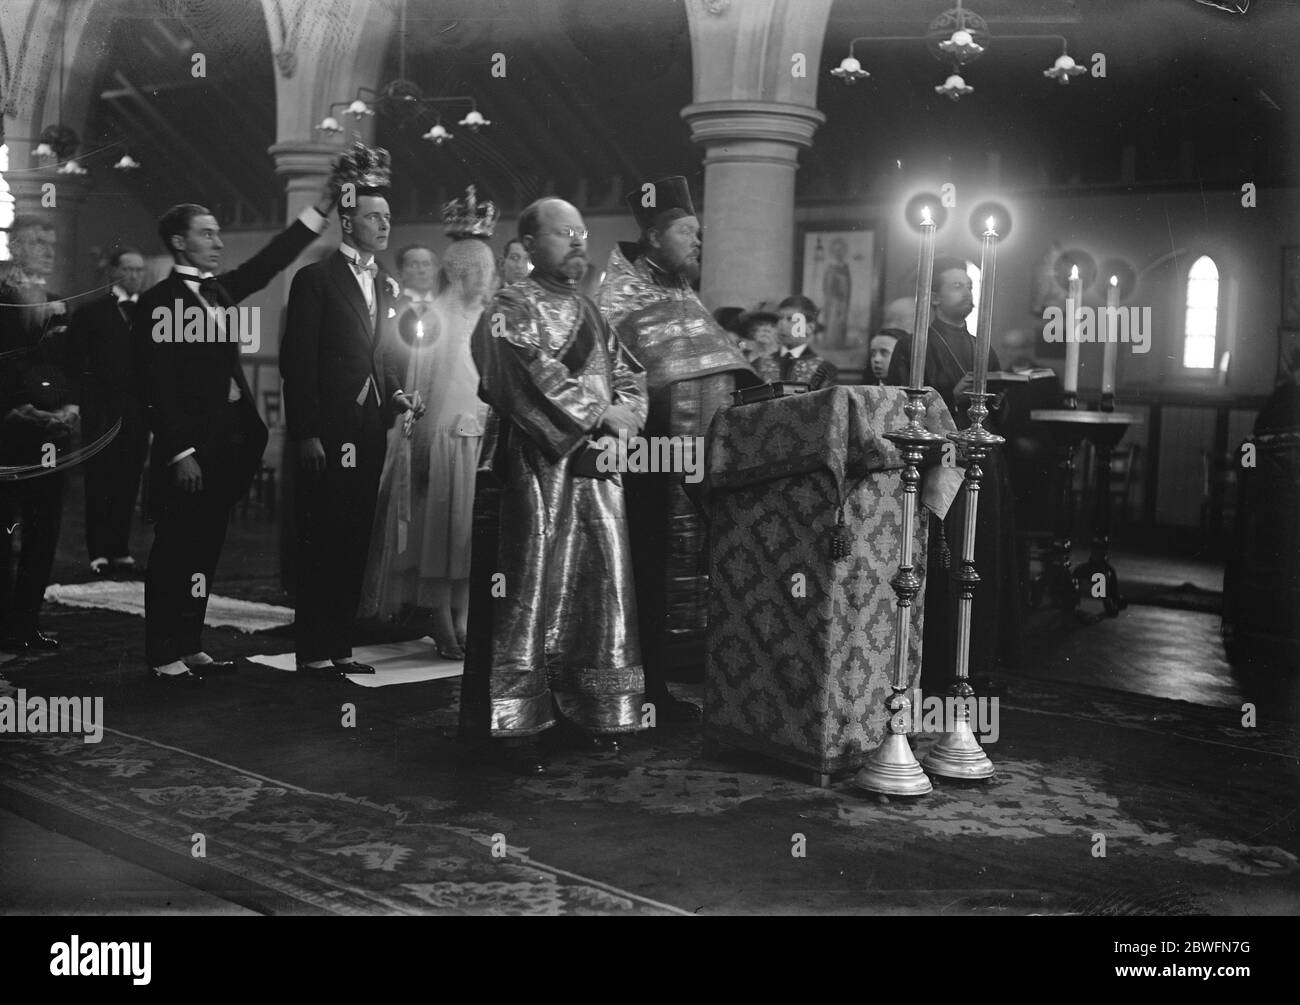 Hochzeit die Ehe fand in der Russischen Kirche, Buckingham Palace Road, und danach in St.. Paul ' s Knightsbridge, von M V Molokhovetz mit Miss L E Billiard Leake. Hochzeitszeremonie in der russischen Kirche 14. Januar 1926 Stockfoto